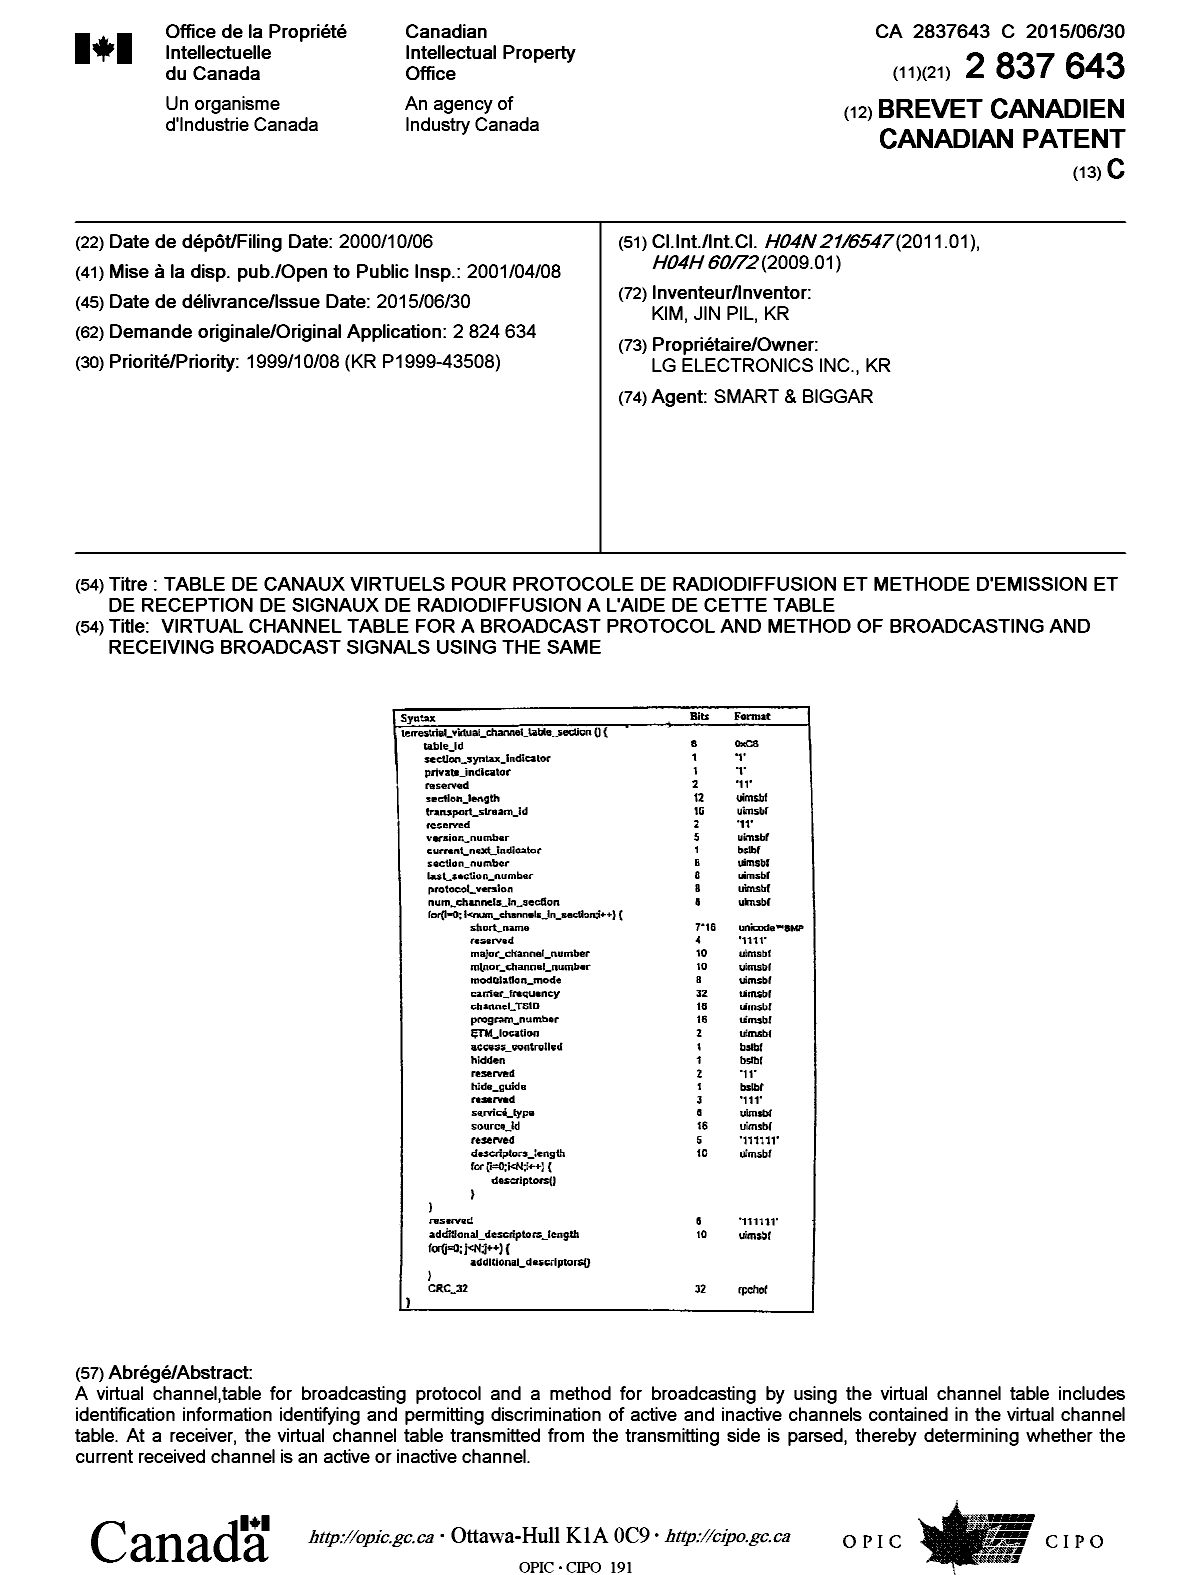 Document de brevet canadien 2837643. Page couverture 20150618. Image 1 de 1